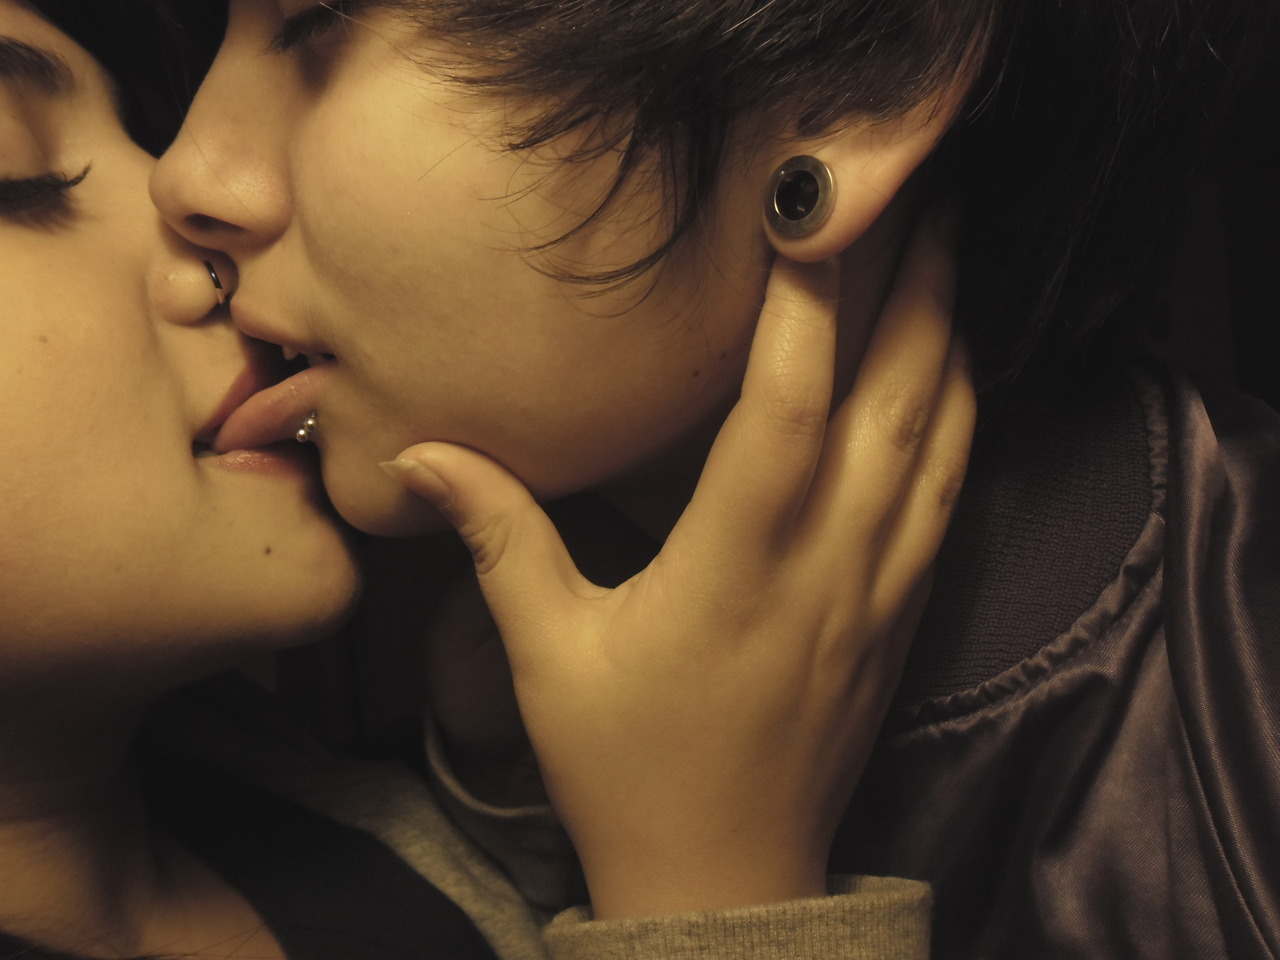 Lesbi viral. Подростковый поцелуй с языком. Поцелуй в засос. Поцелуй девушек взасос.